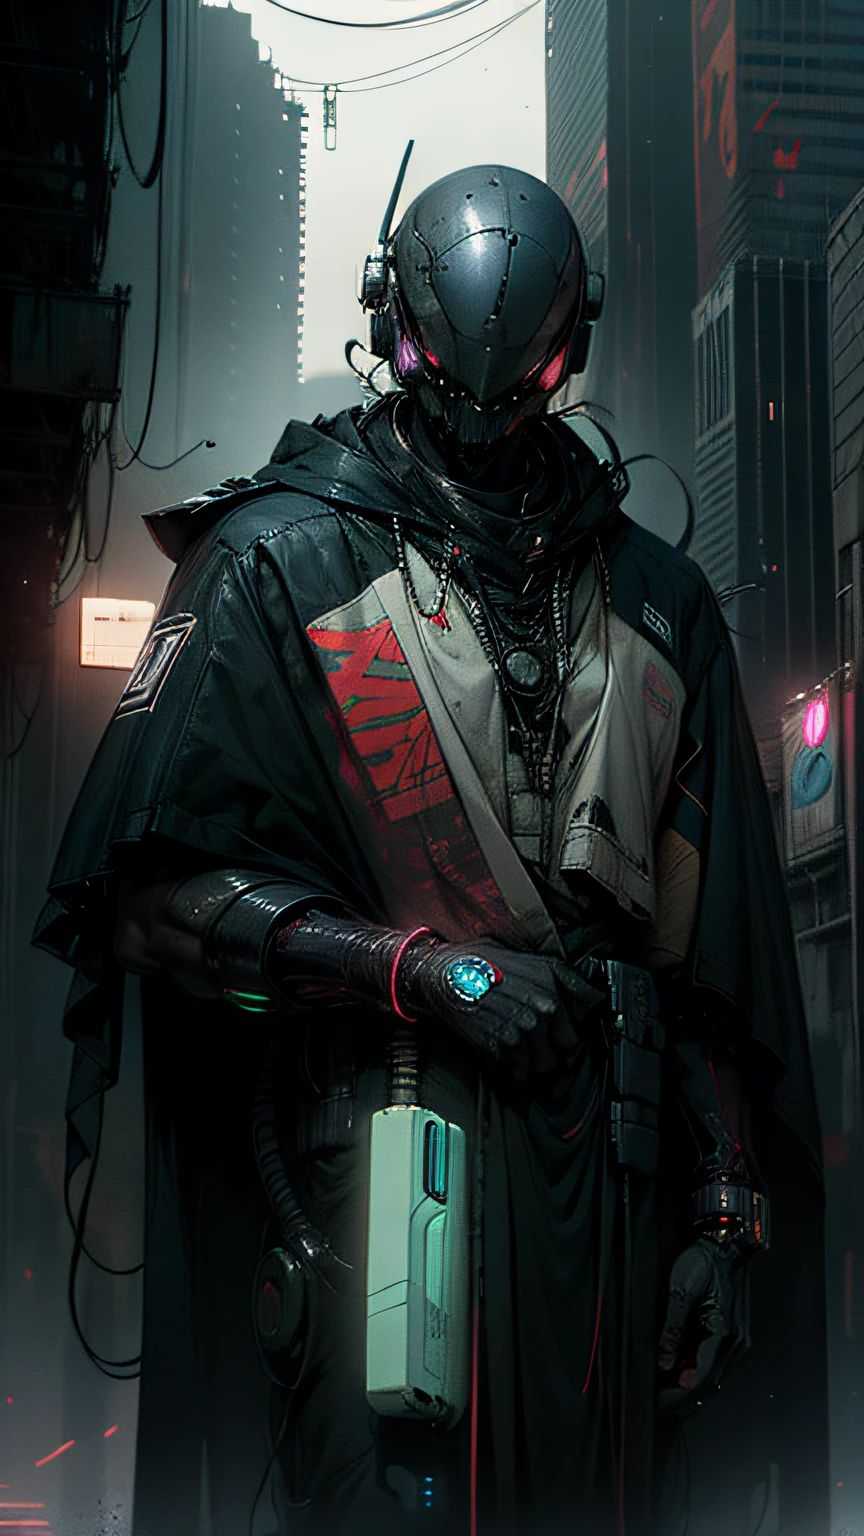 Robort Derpd Ranger travaille pour Scifi Mega Corporation, un agent d&#39;élite d&#39;entreprise patrouillant dans les rues, portant une cape de robes multicolores détaillées, Bureaux corporatifs,scène cyberpunk, rue animée, néons, vêtements en plastique rouge